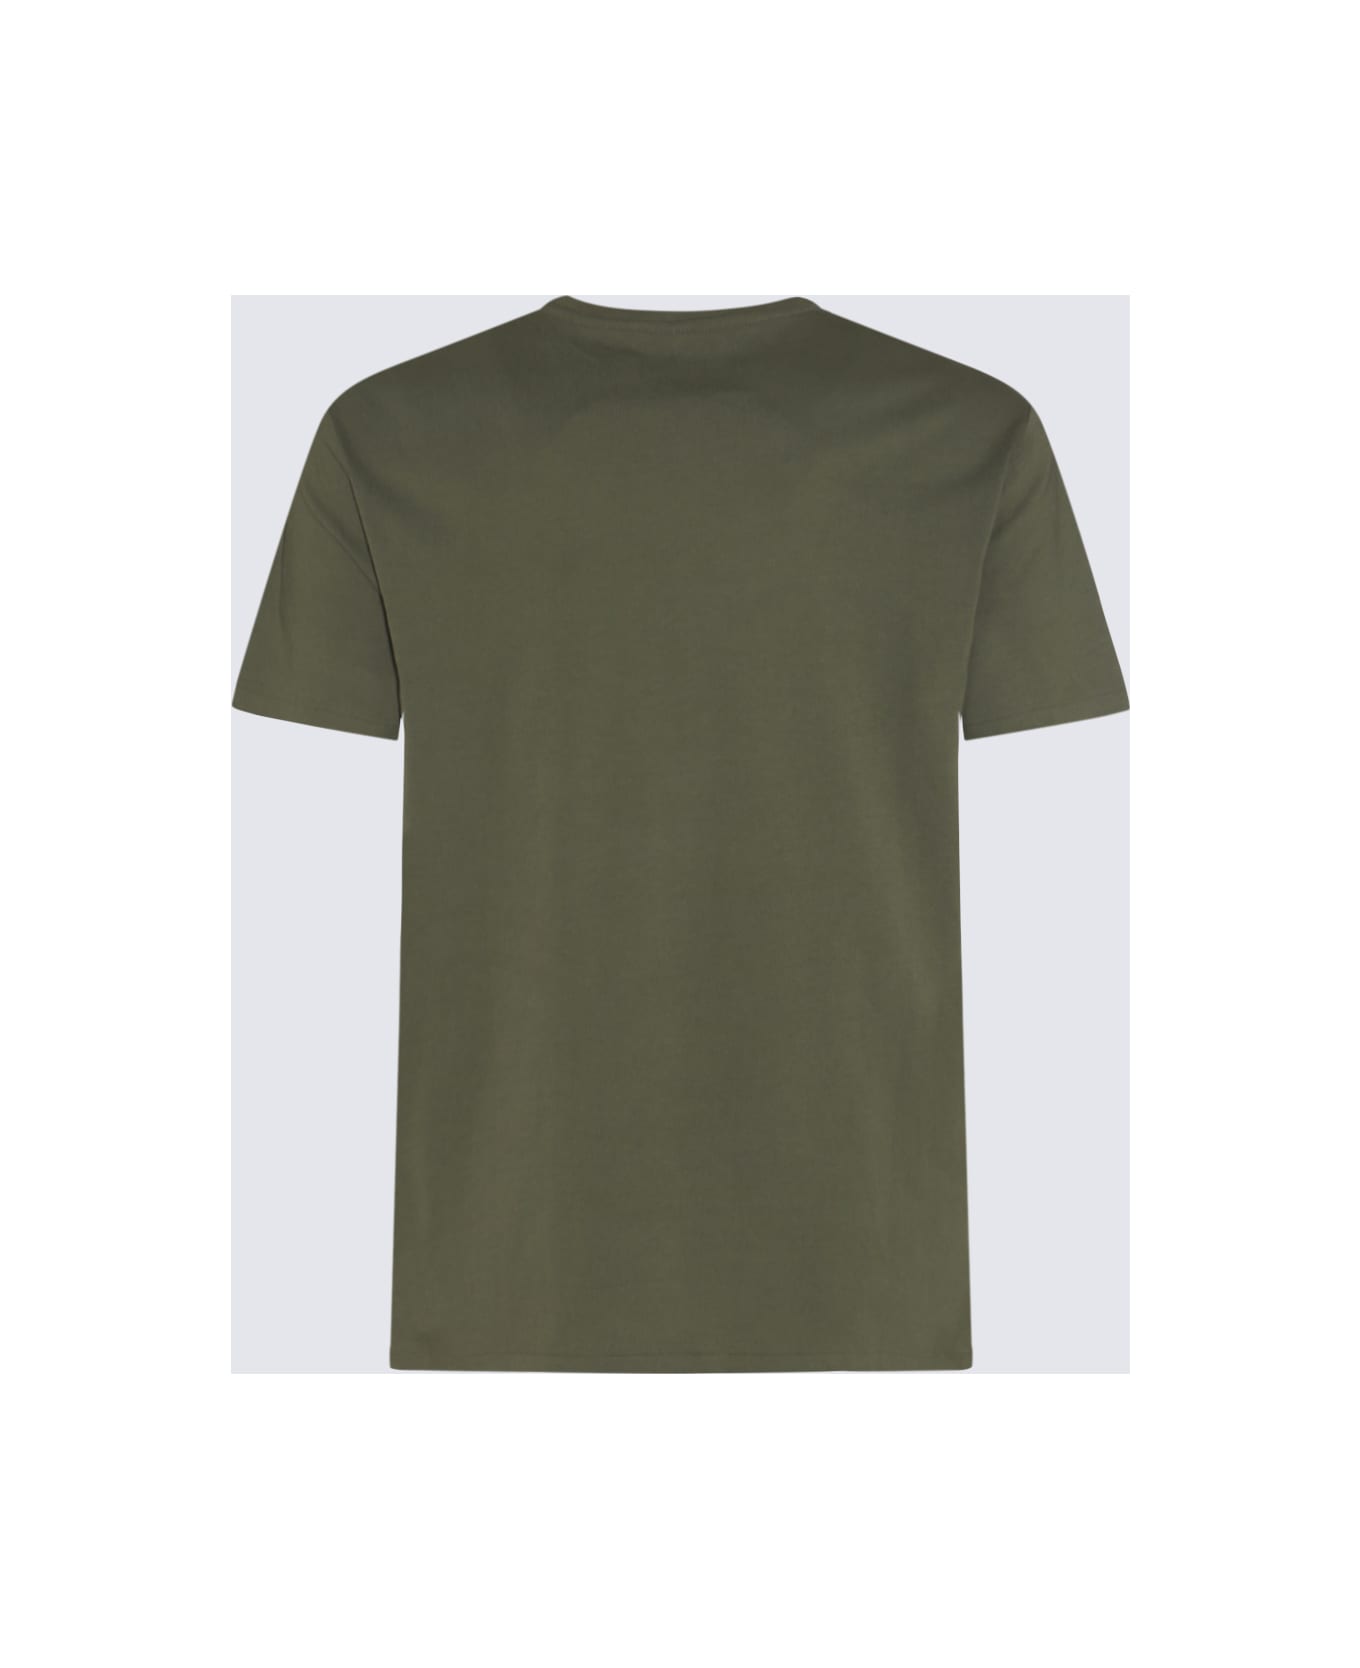 Polo Ralph Lauren Dark Green Cotton T-shirt - Dark sage